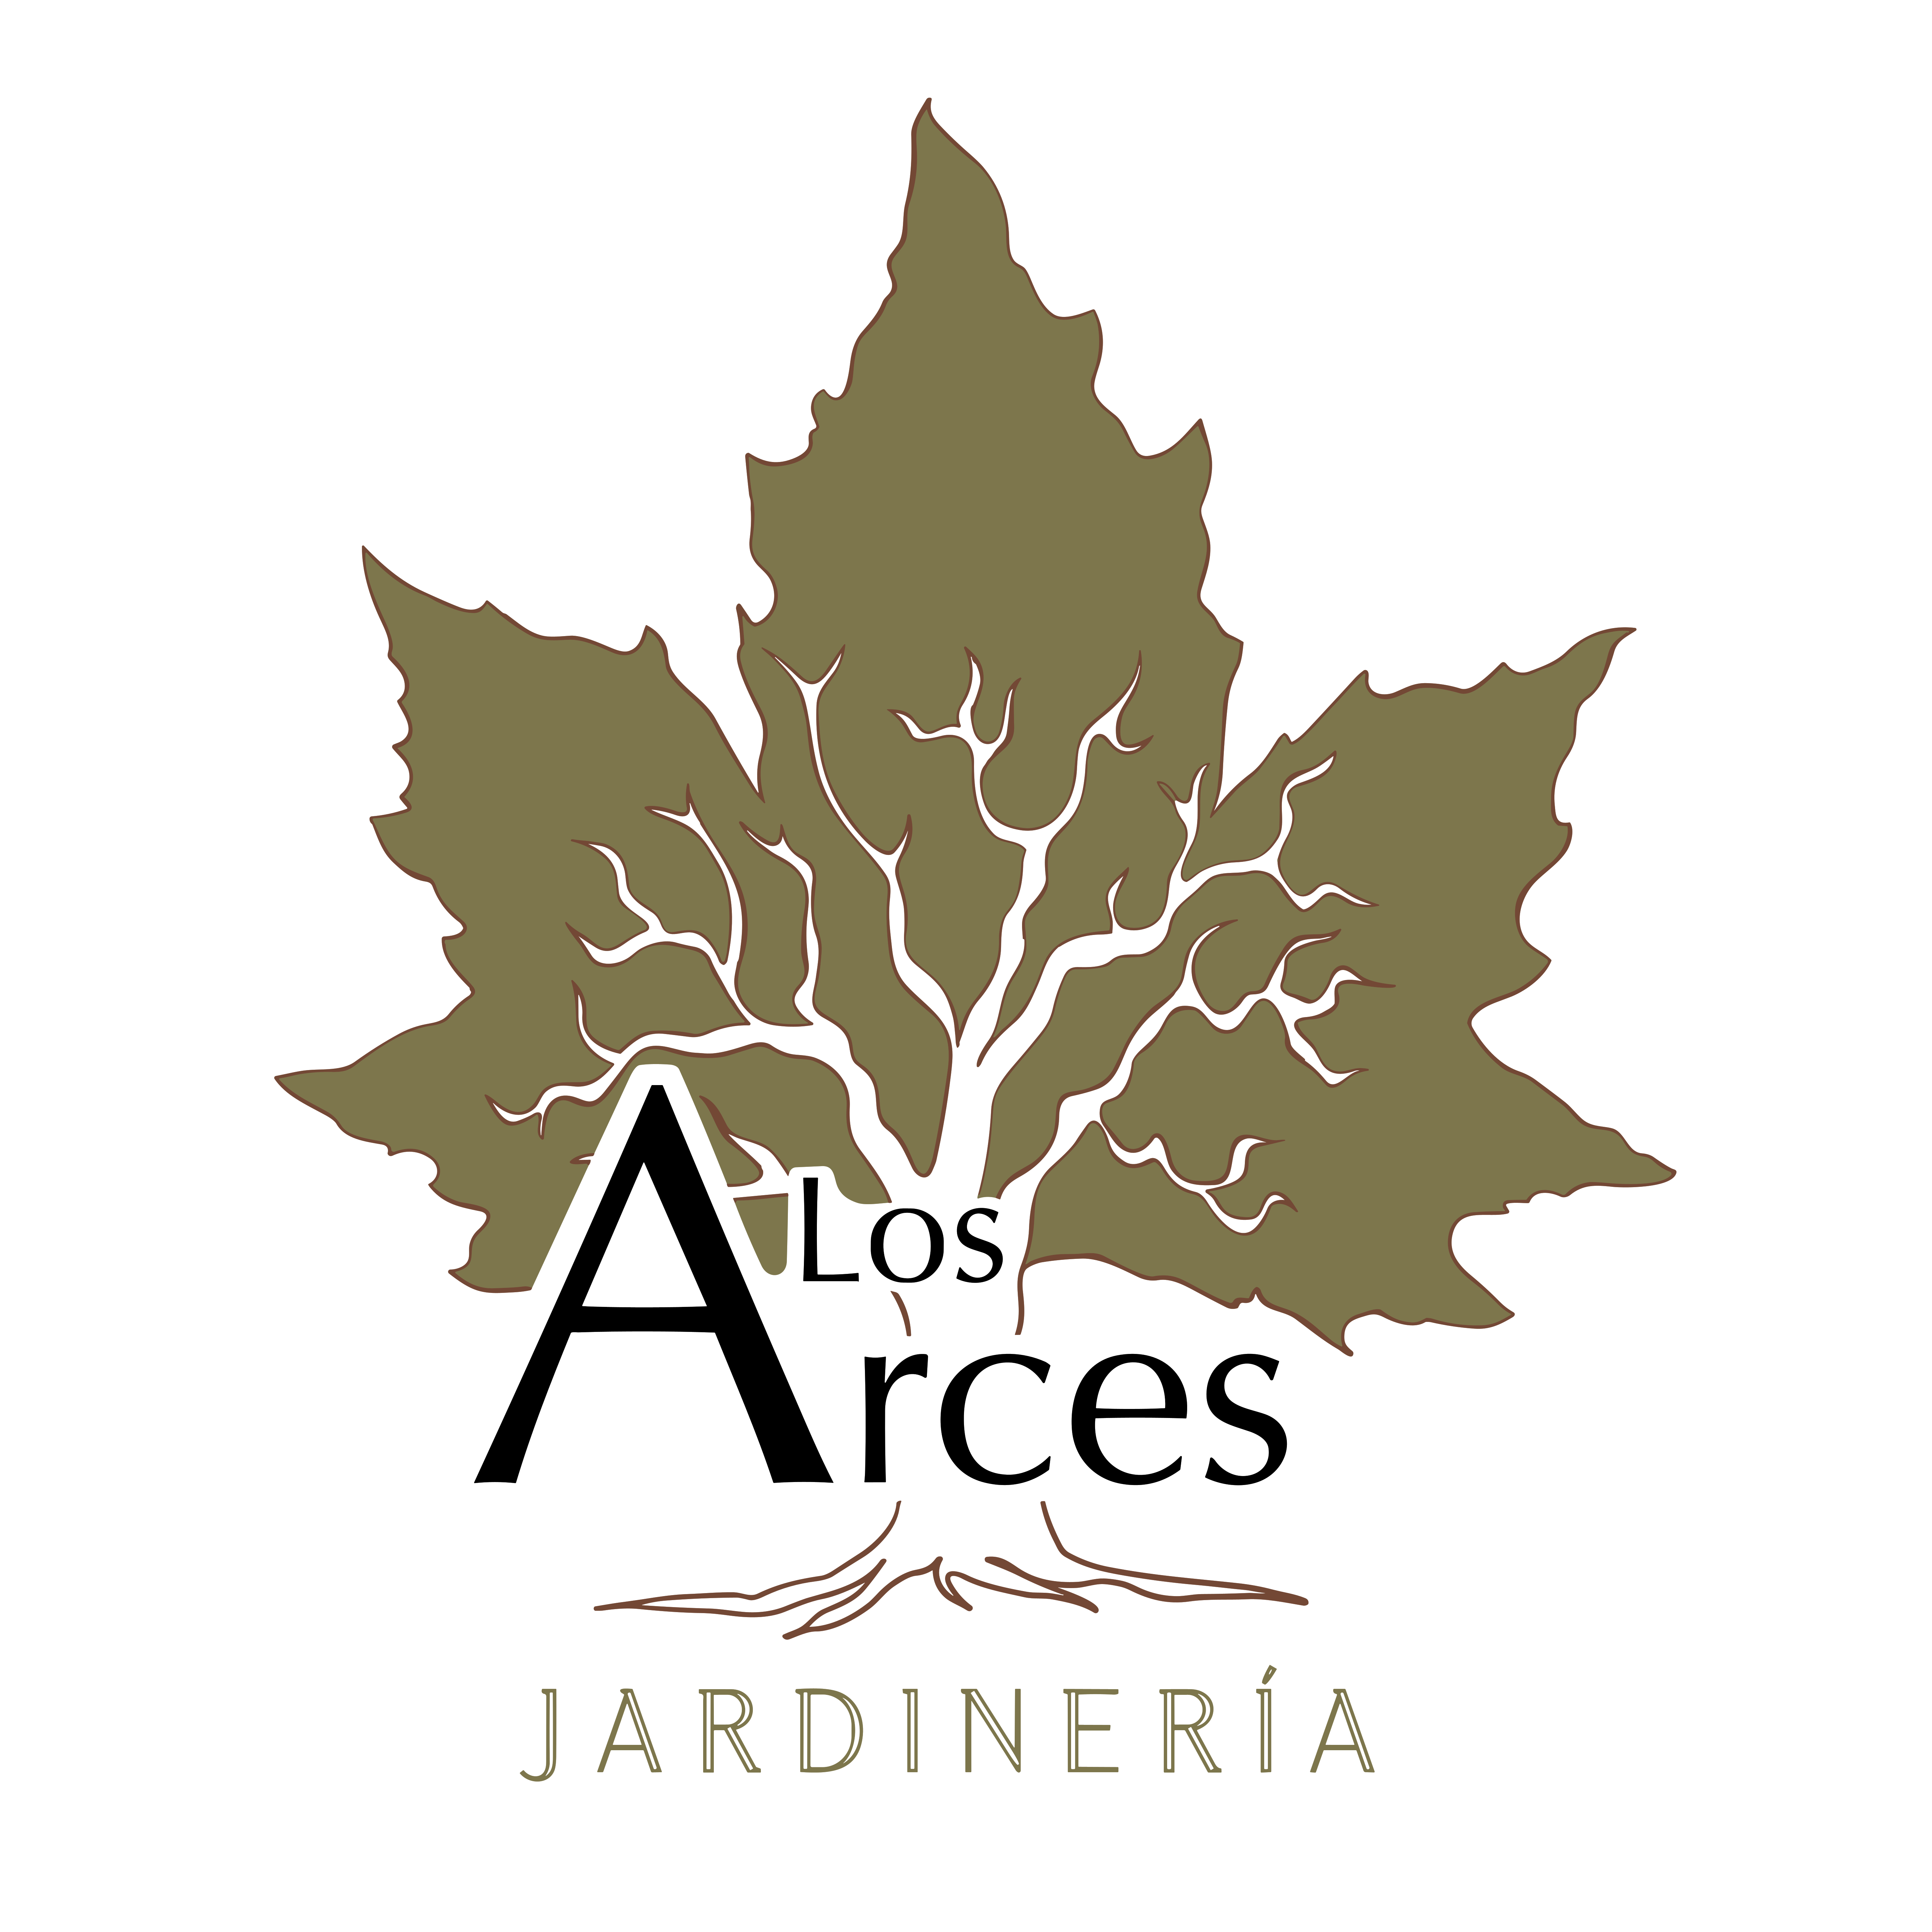 JARDINERIA LOS ARCES